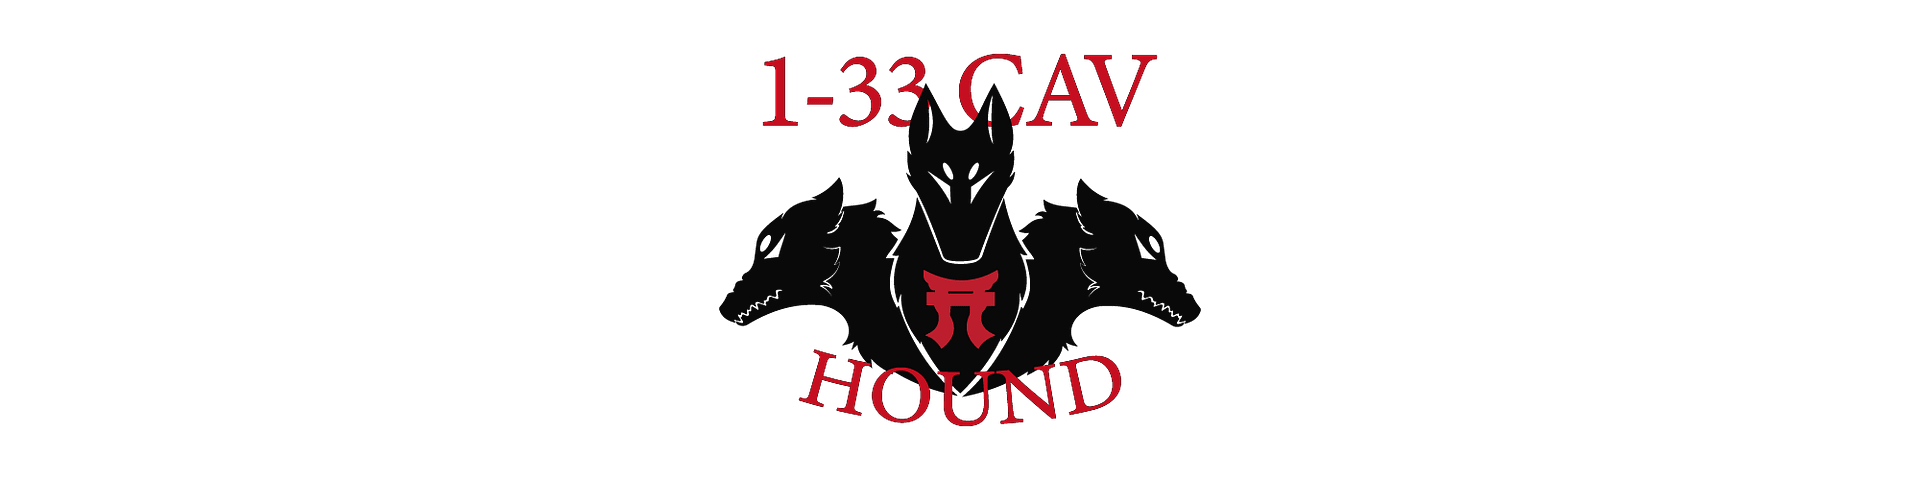 1-33 CAV HOUND